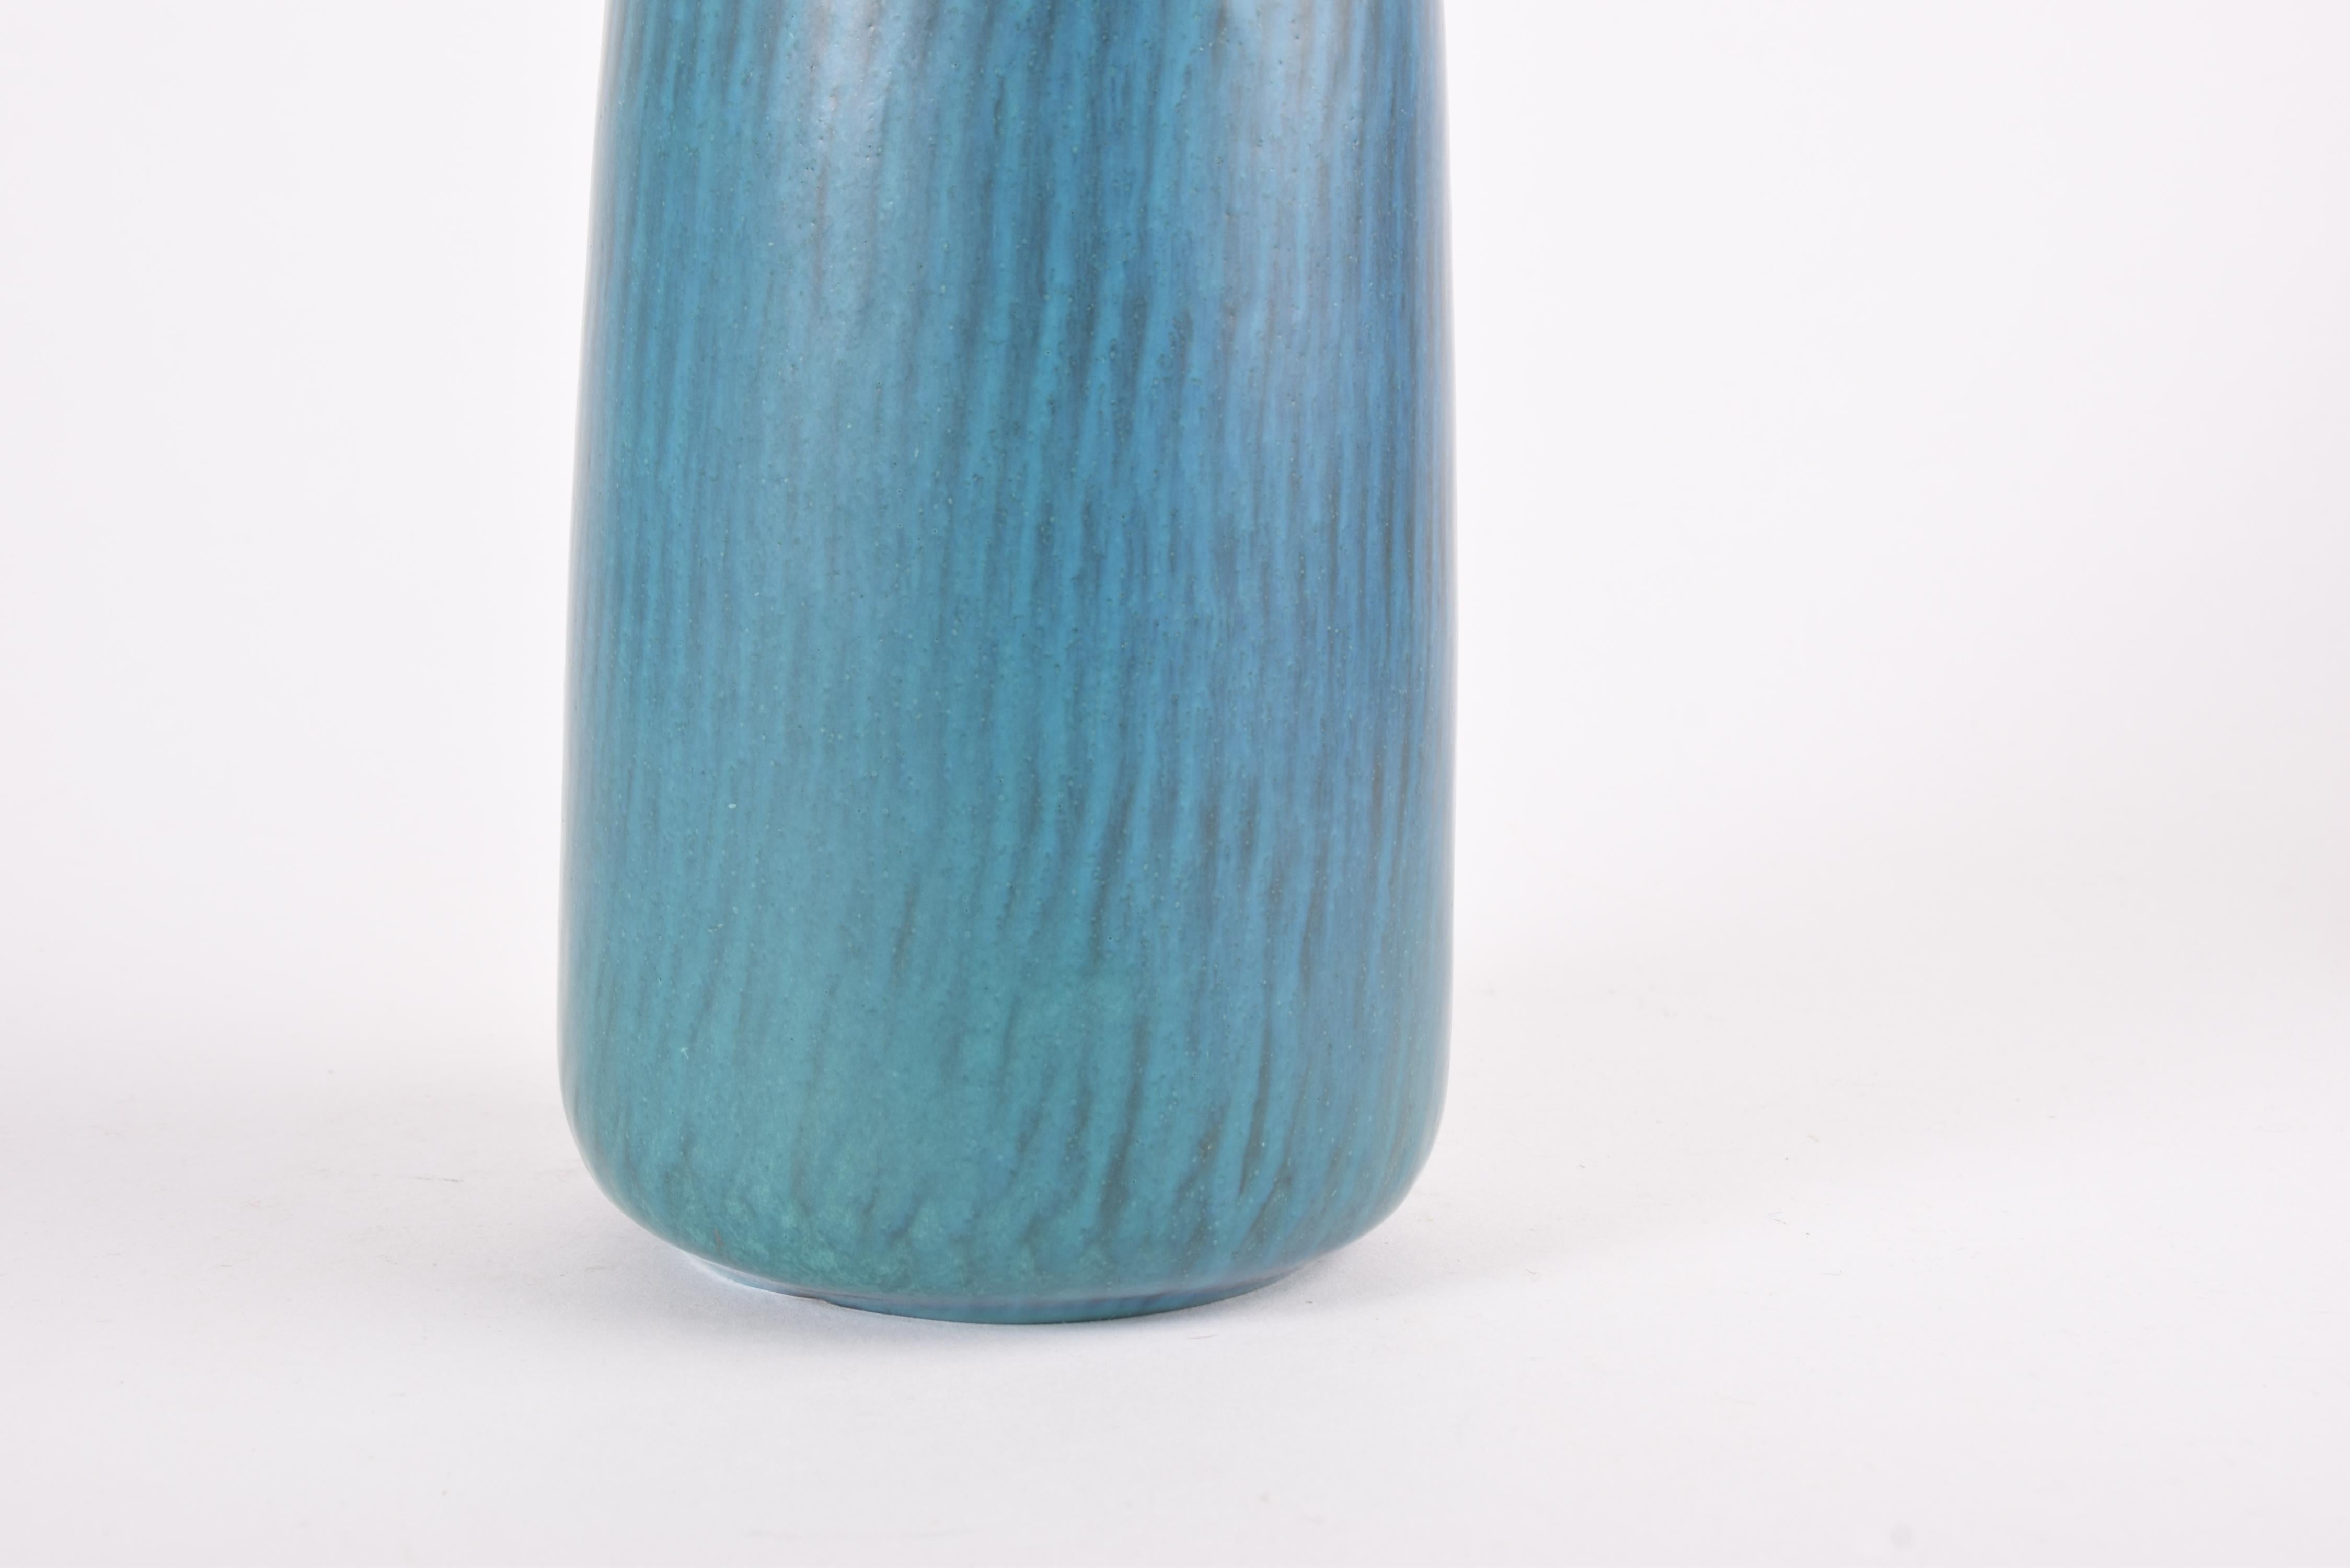 Vernissé Gunnar Nylund for Nymølle Tall Vase Turquoise Blue, Scandinavian Modernity 1960s en vente